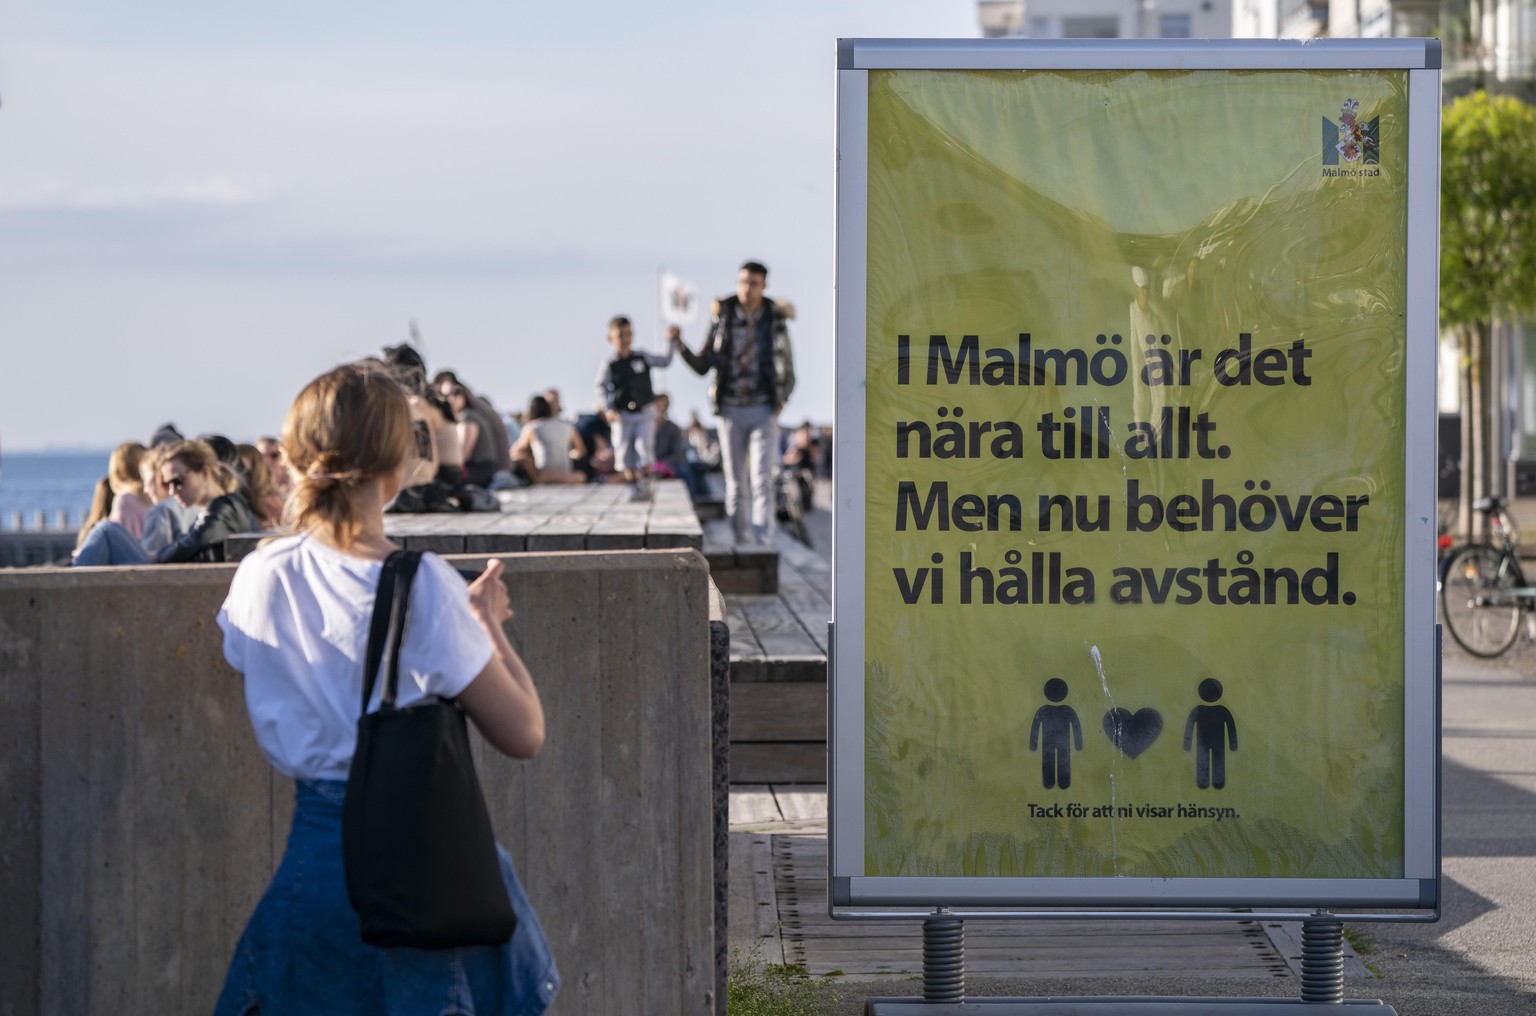 «In Malmö ist alles nah. Aber jetzt müssen wir Abstand halten», sagt ein Plakat in der südschwedischen Stadt Malmö. Das gute Wetter lockt aber trotzdem viele Leute ans Meer.